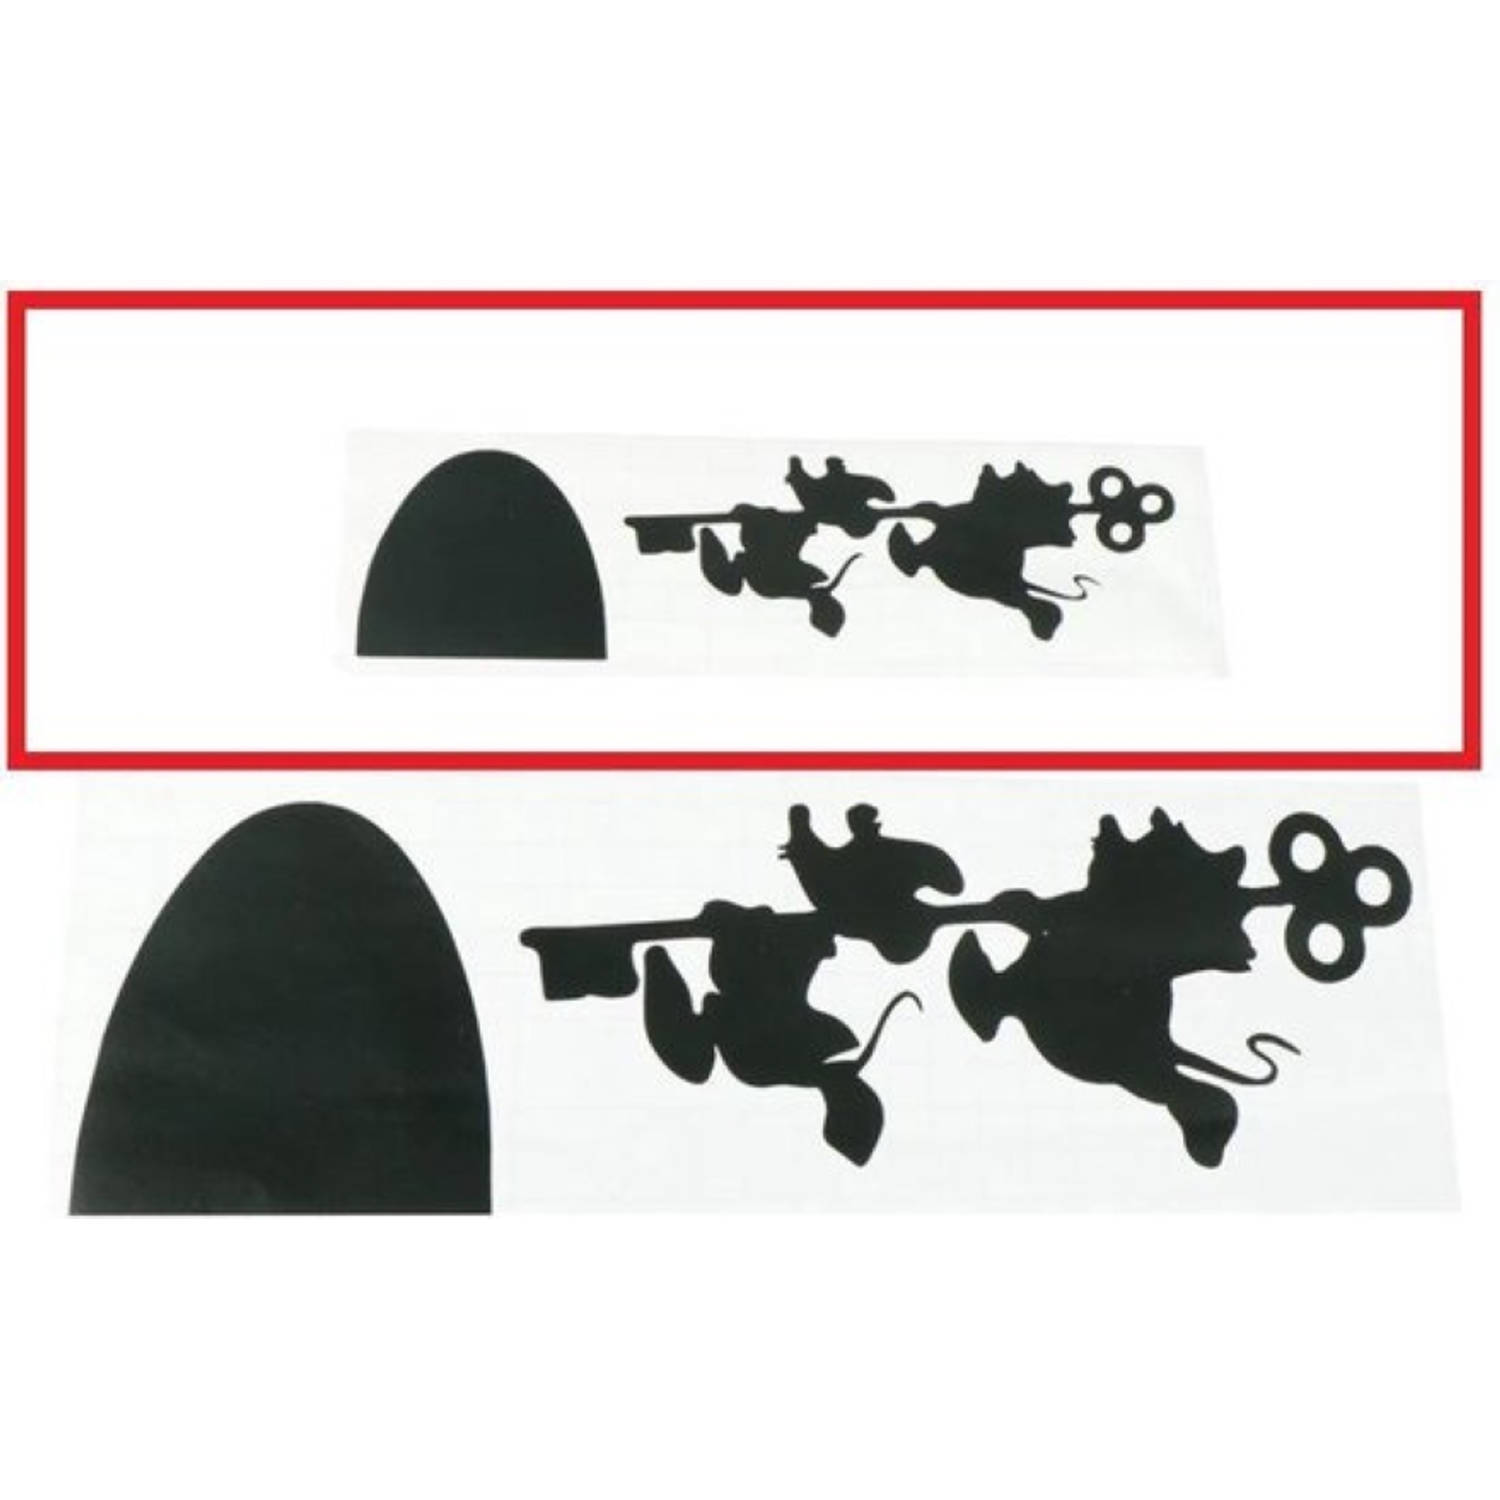 Muursticker Plintsticker Zwart Muizen met sleutel lopen naar links 18 cm x 6 cm woonkamer zolder sla